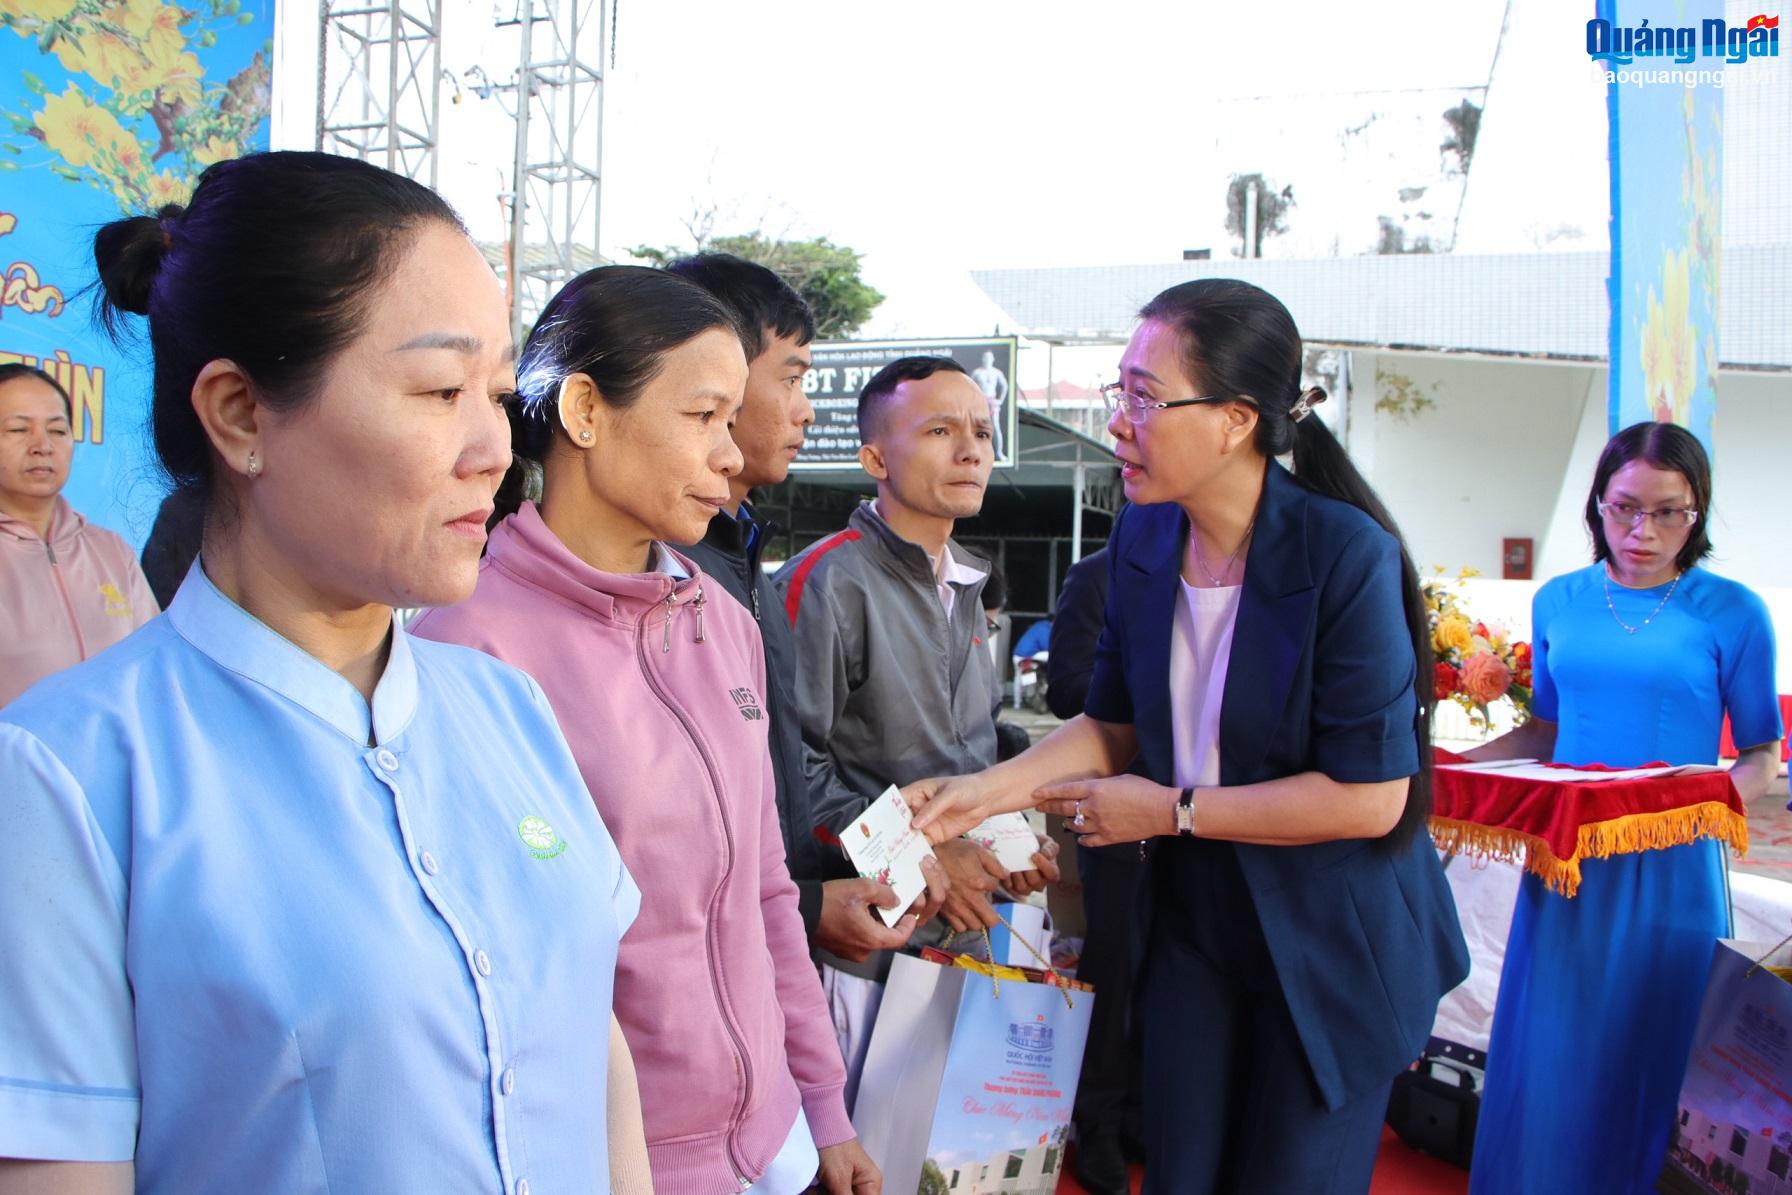  Bí thư Tỉnh ủy Bùi Thị Quỳnh Vân trao quà cho đoàn viên, người lao động.